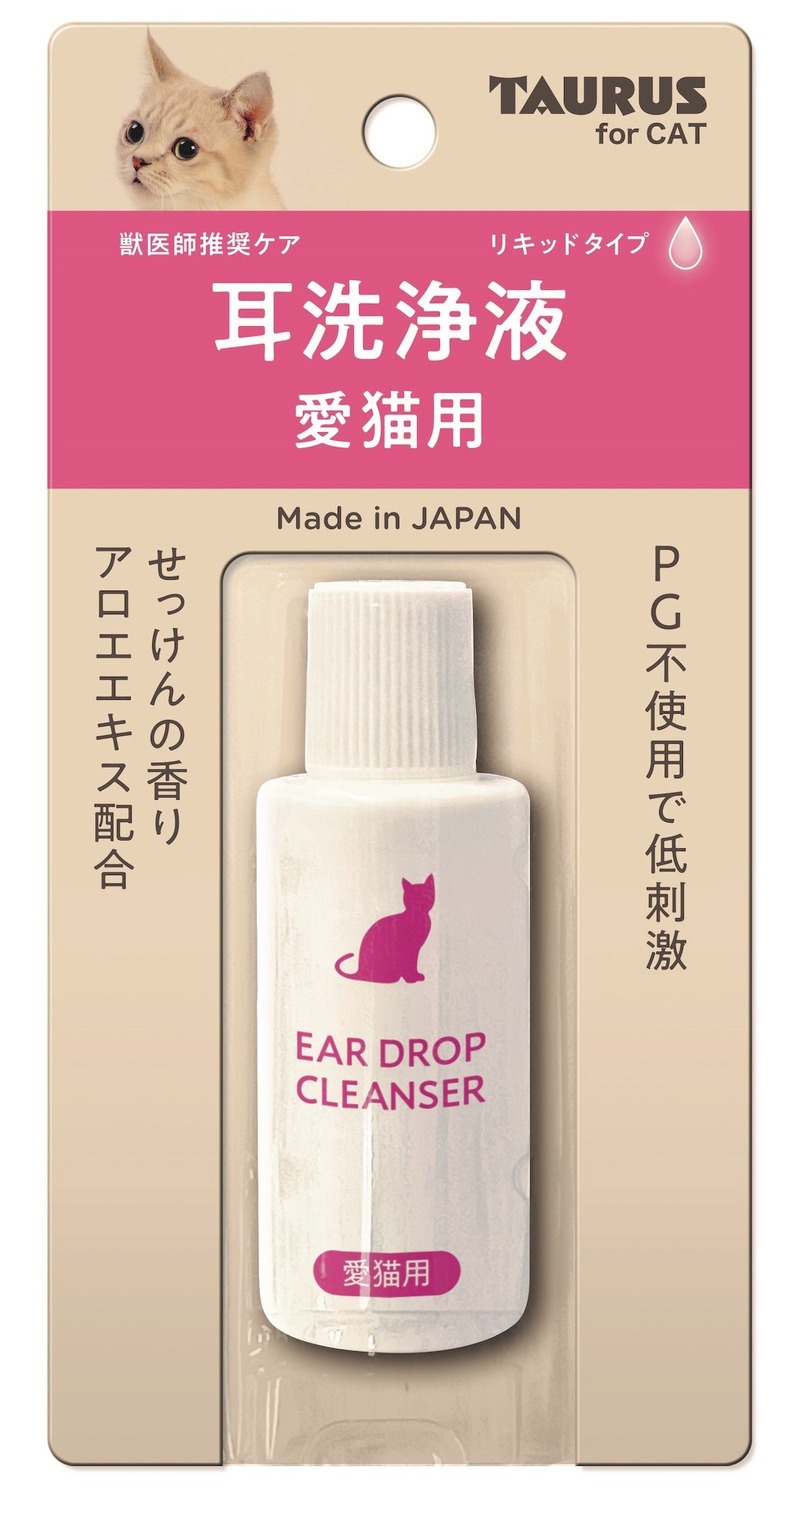 犬猫の耳臭や涙やけをケアする洗浄液シリーズを発売